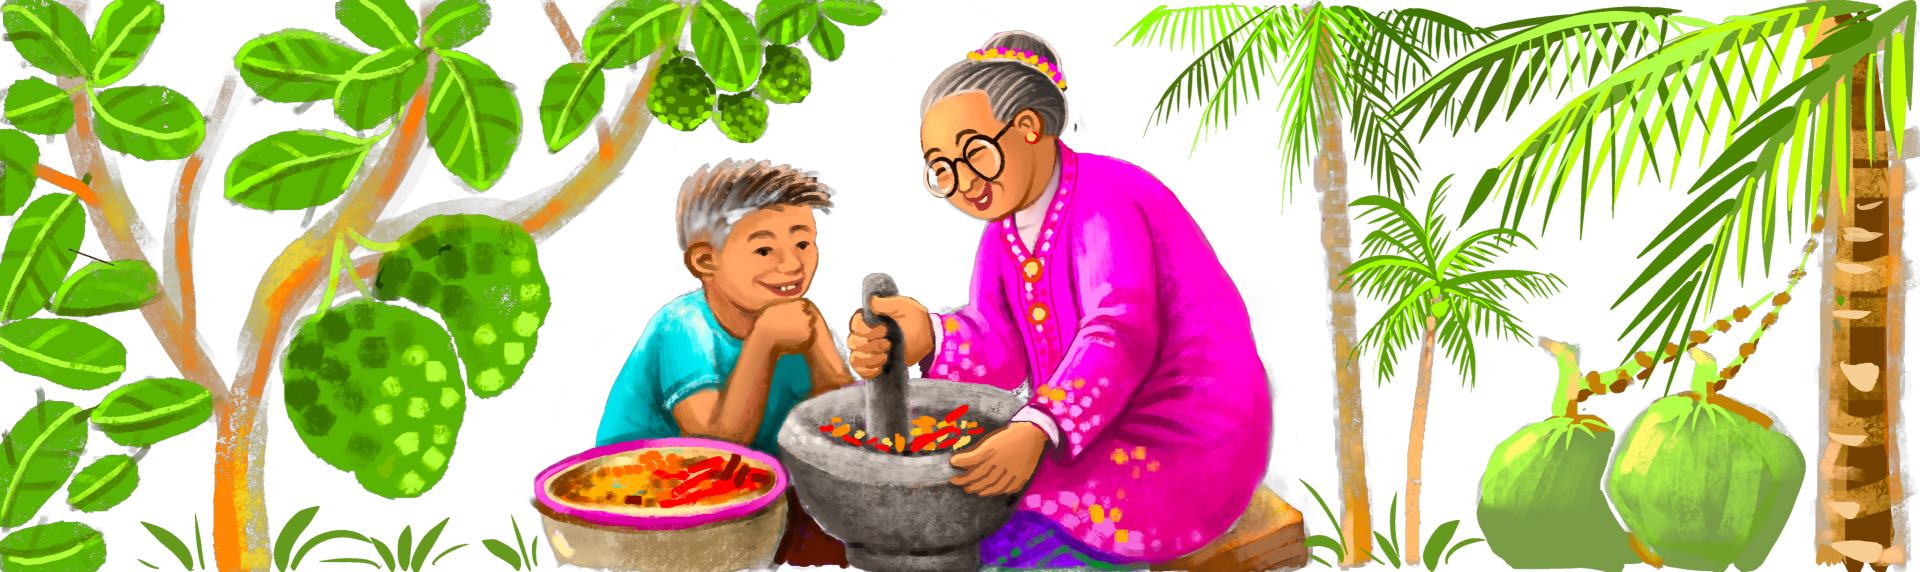 Artist Impression of Mari Kita Makan by Yip Yew Chong (Courtesy of Yip Yew Chong)